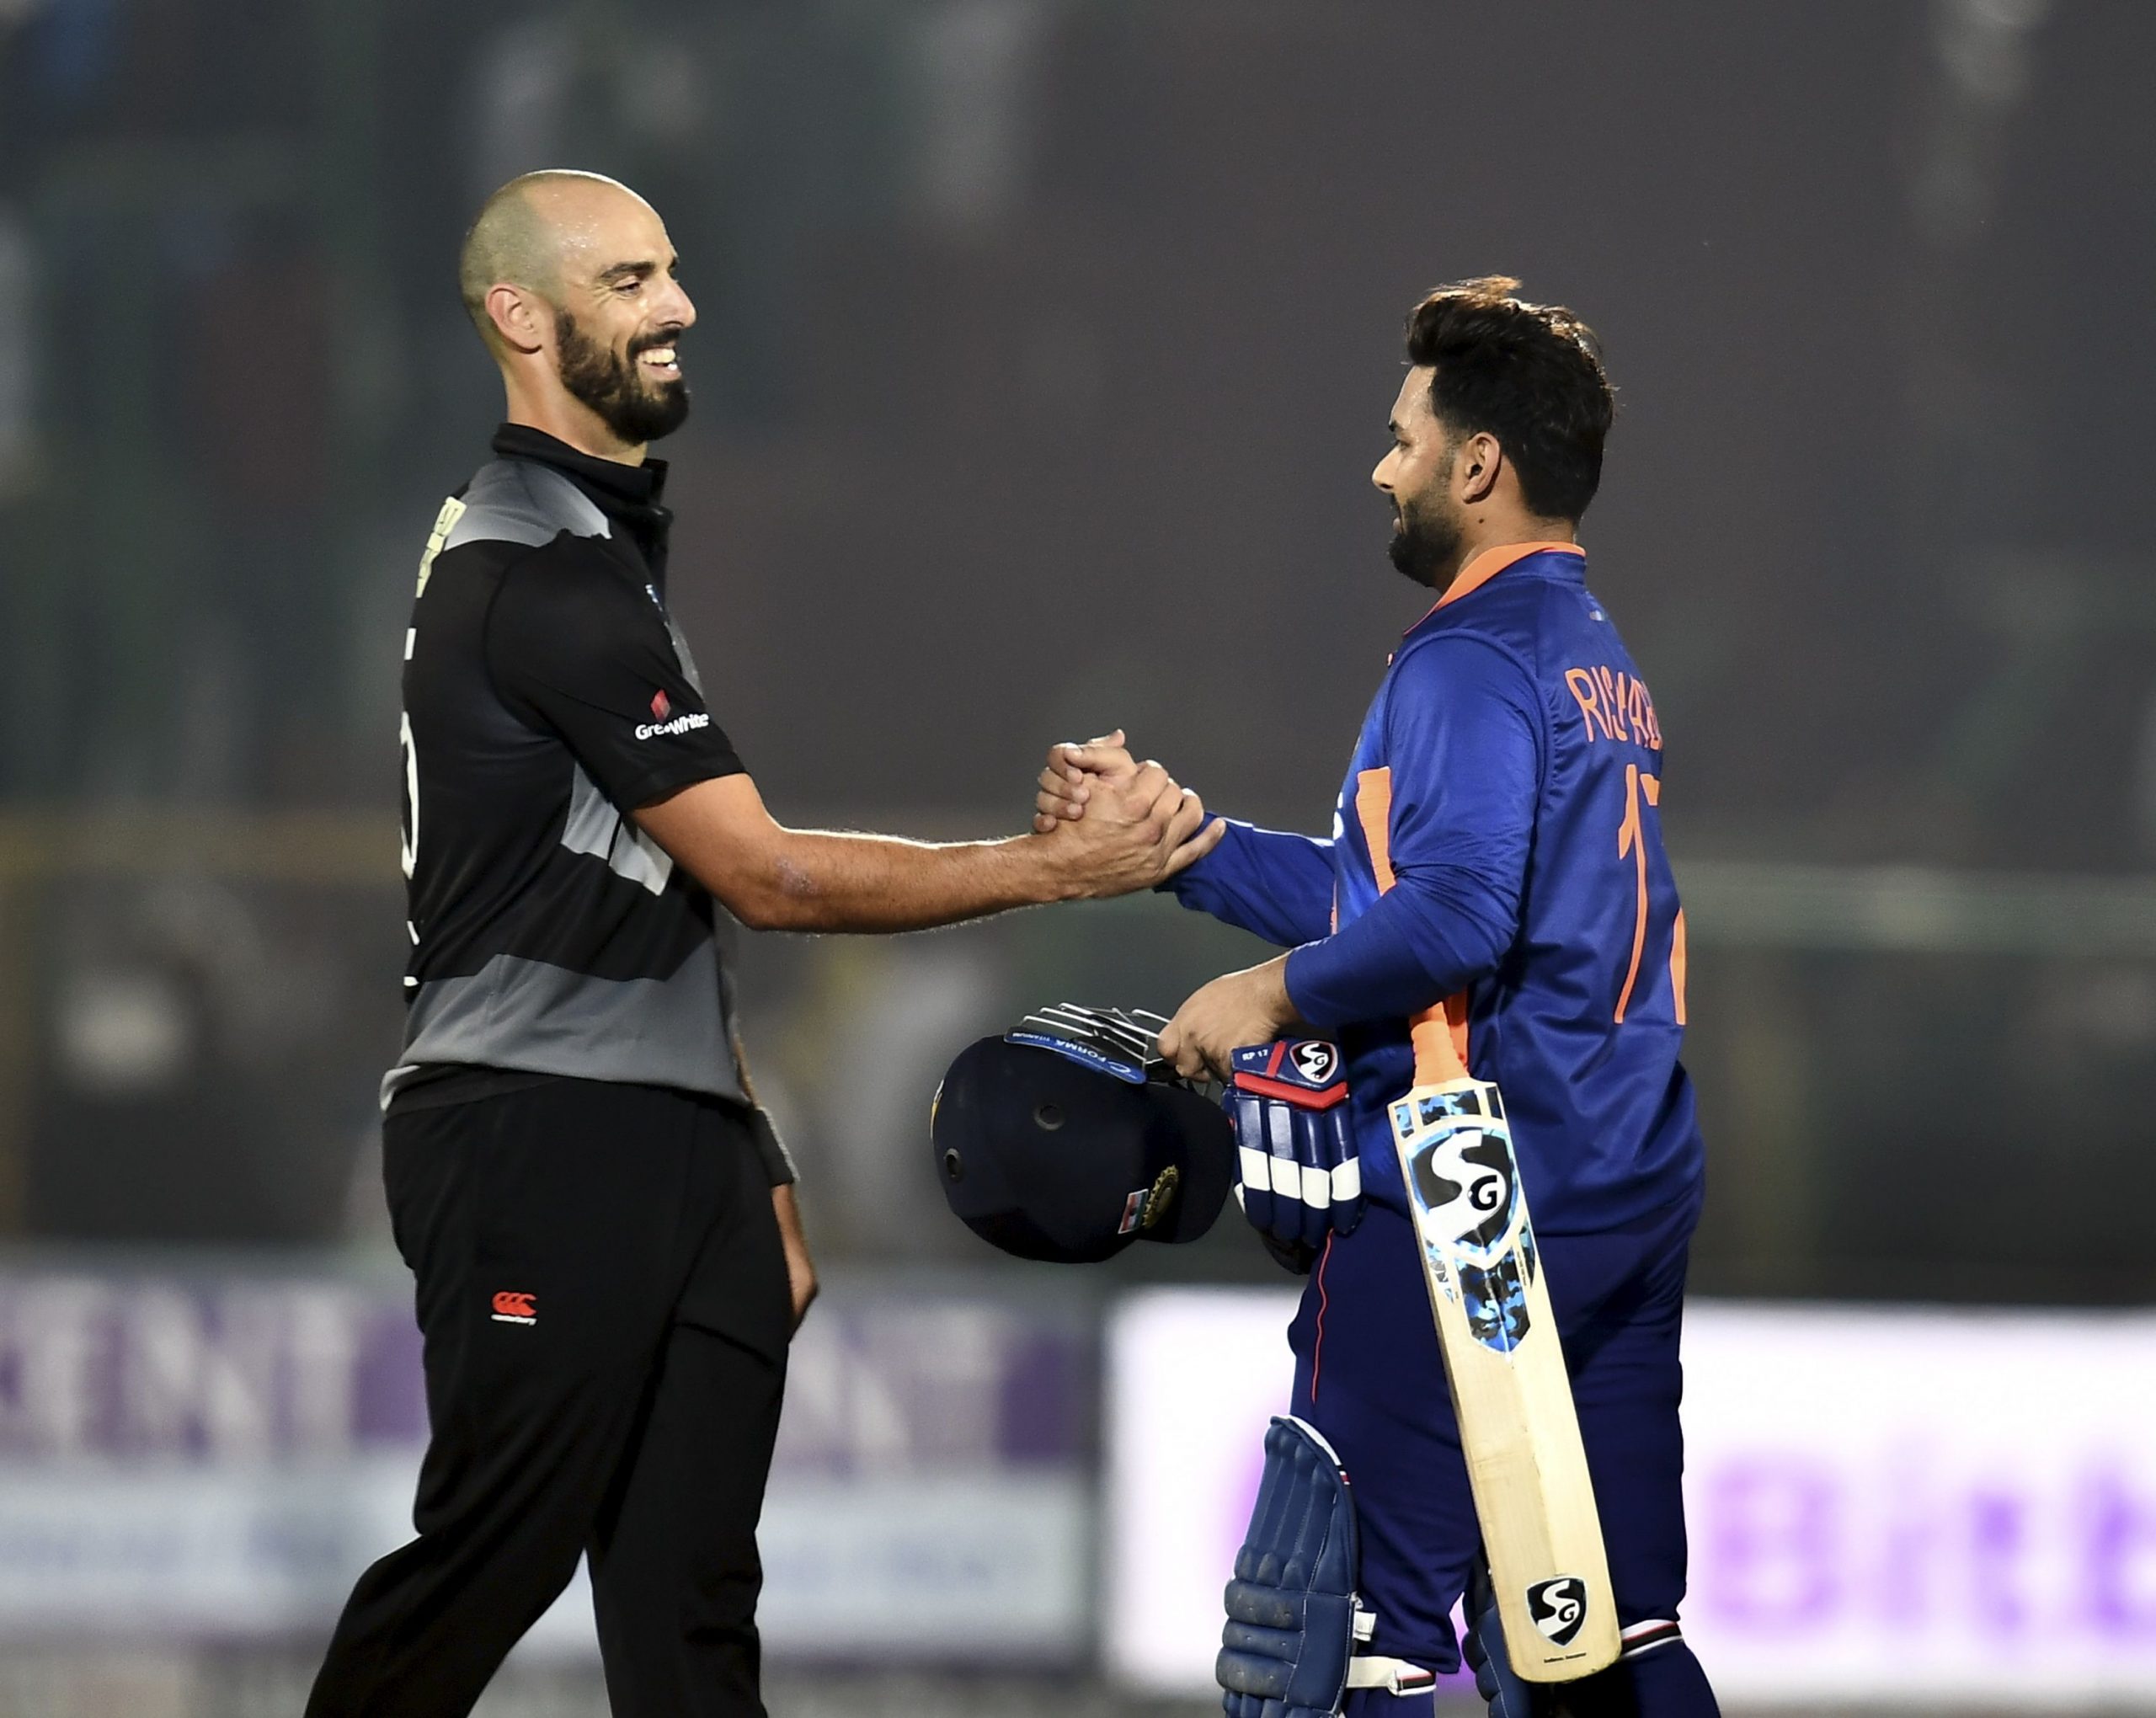 India vs New Zealand: Rohit Sharma, new-look India aim to seal T20I series